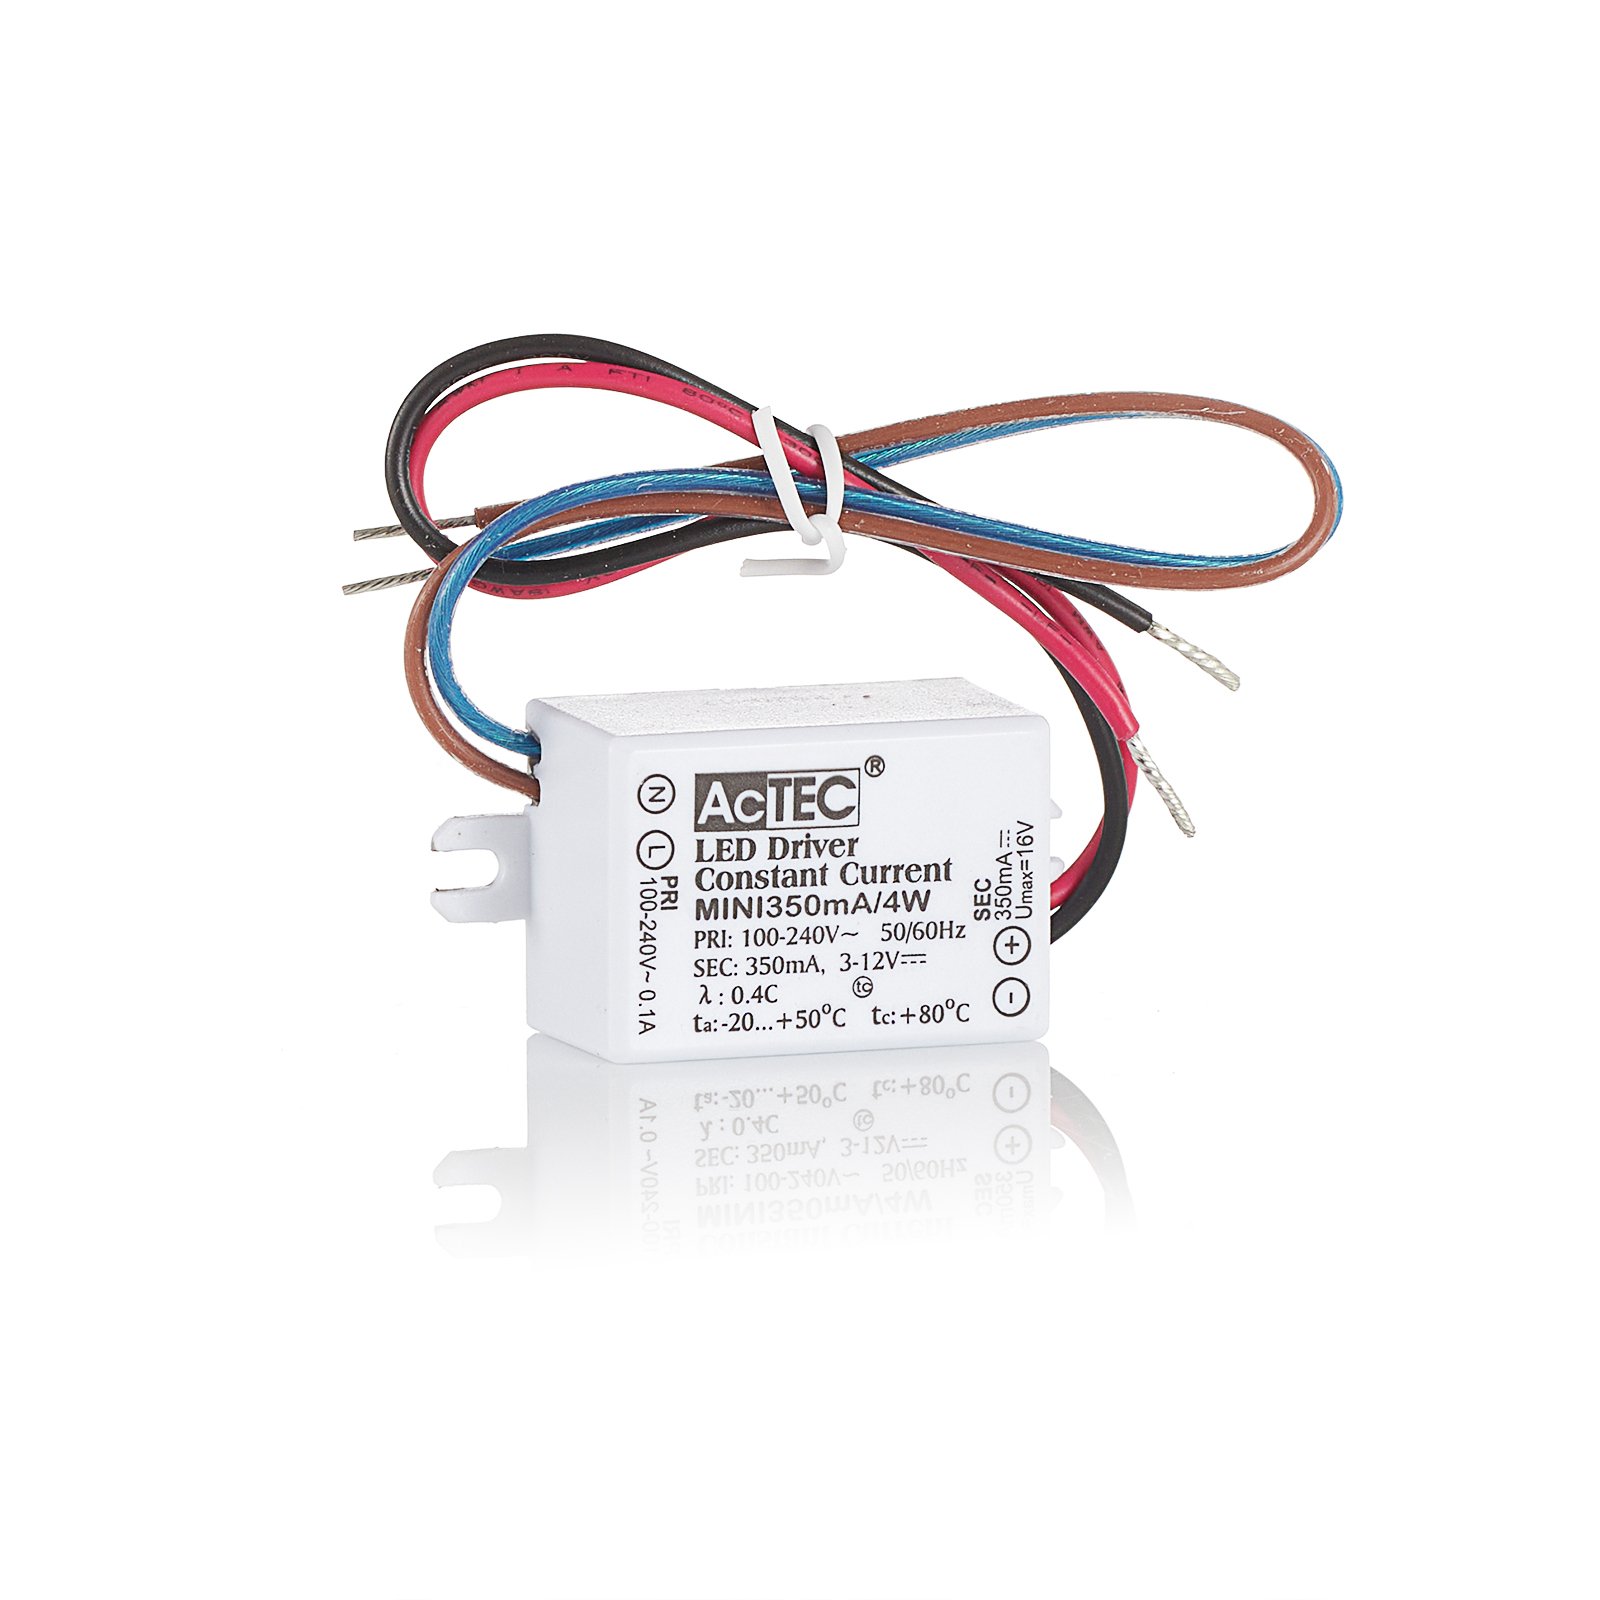 AcTEC Mini LED budič CC 700 mA, 4 W, IP65